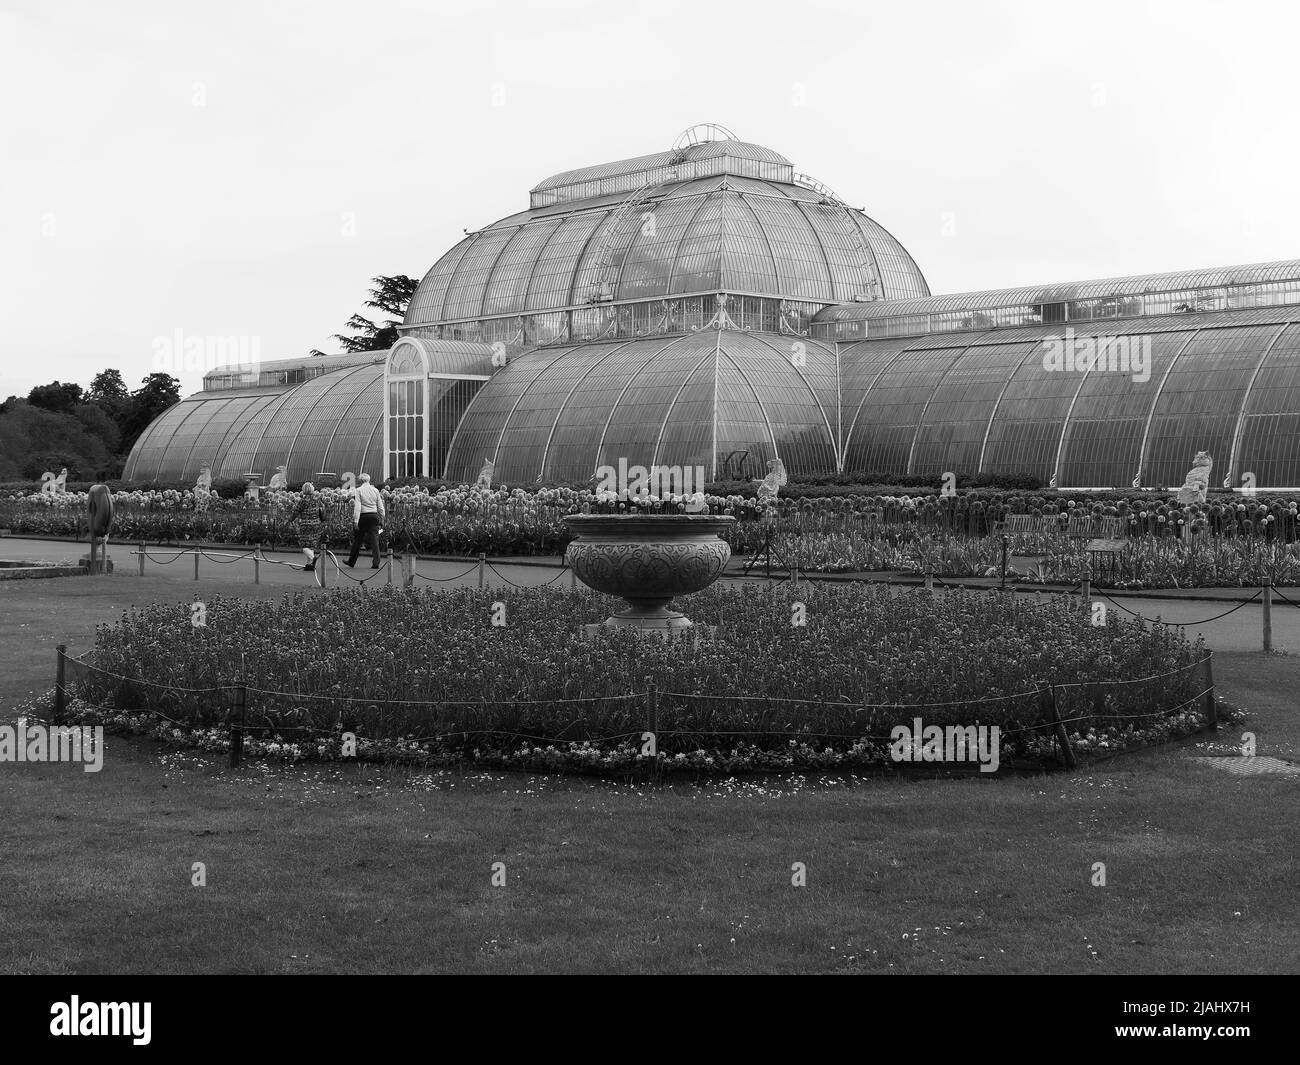 Richmond, Grand Londres, Angleterre, 18 mai 2022: Jardins botaniques royaux Kew. Un couple de personnes âgées passe devant le Palm House. Monochrome. Banque D'Images